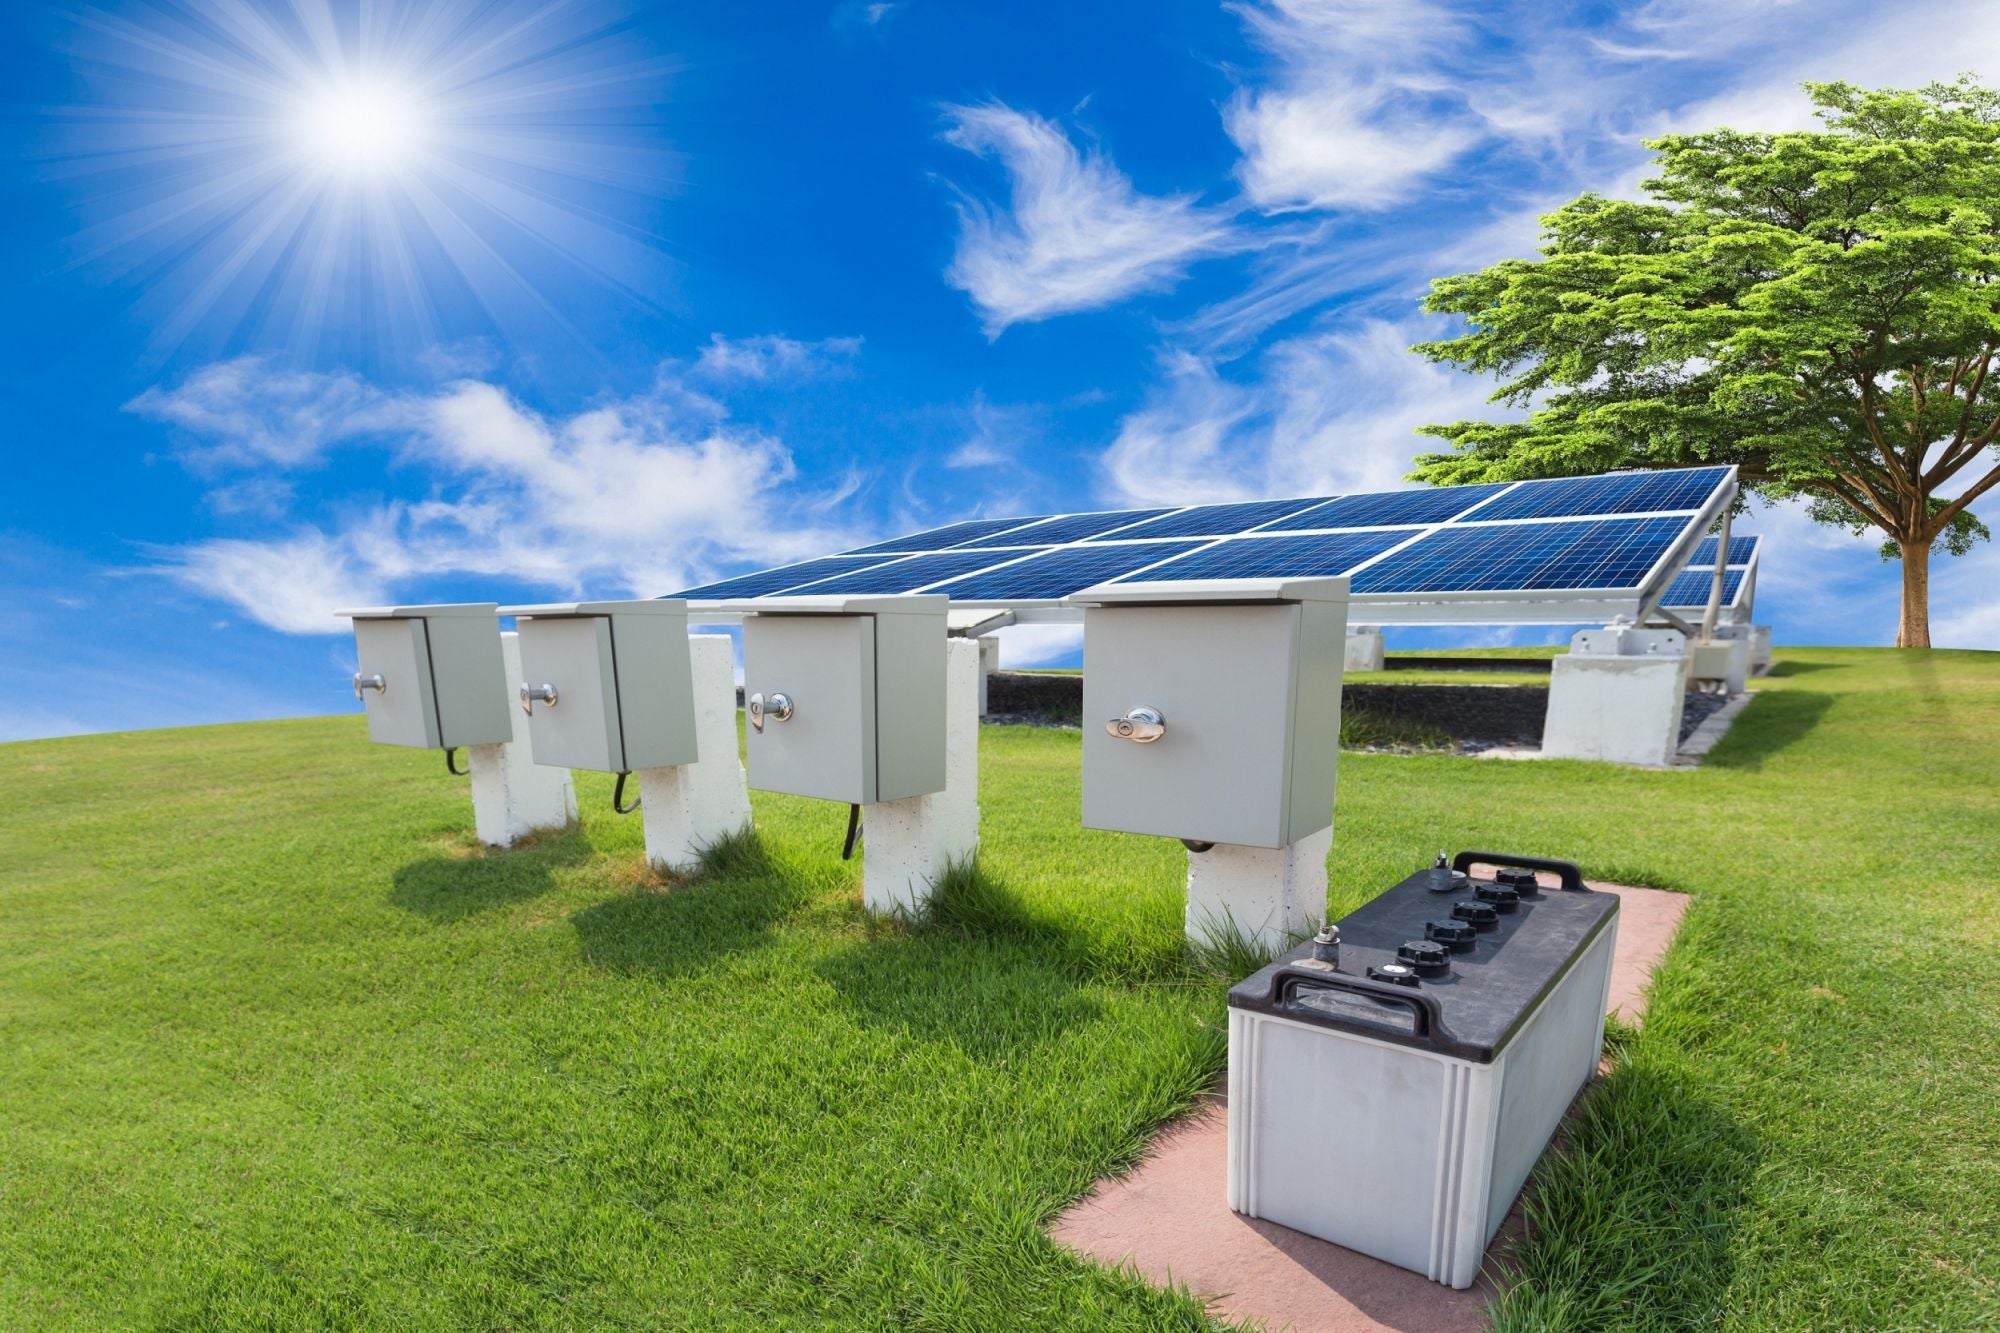 Energy batteries. Battery Energy Storage Systems. Возобновляемые источники энергии. Накопители солнечной энергии. Солнечные панели в сельском хозяйстве.